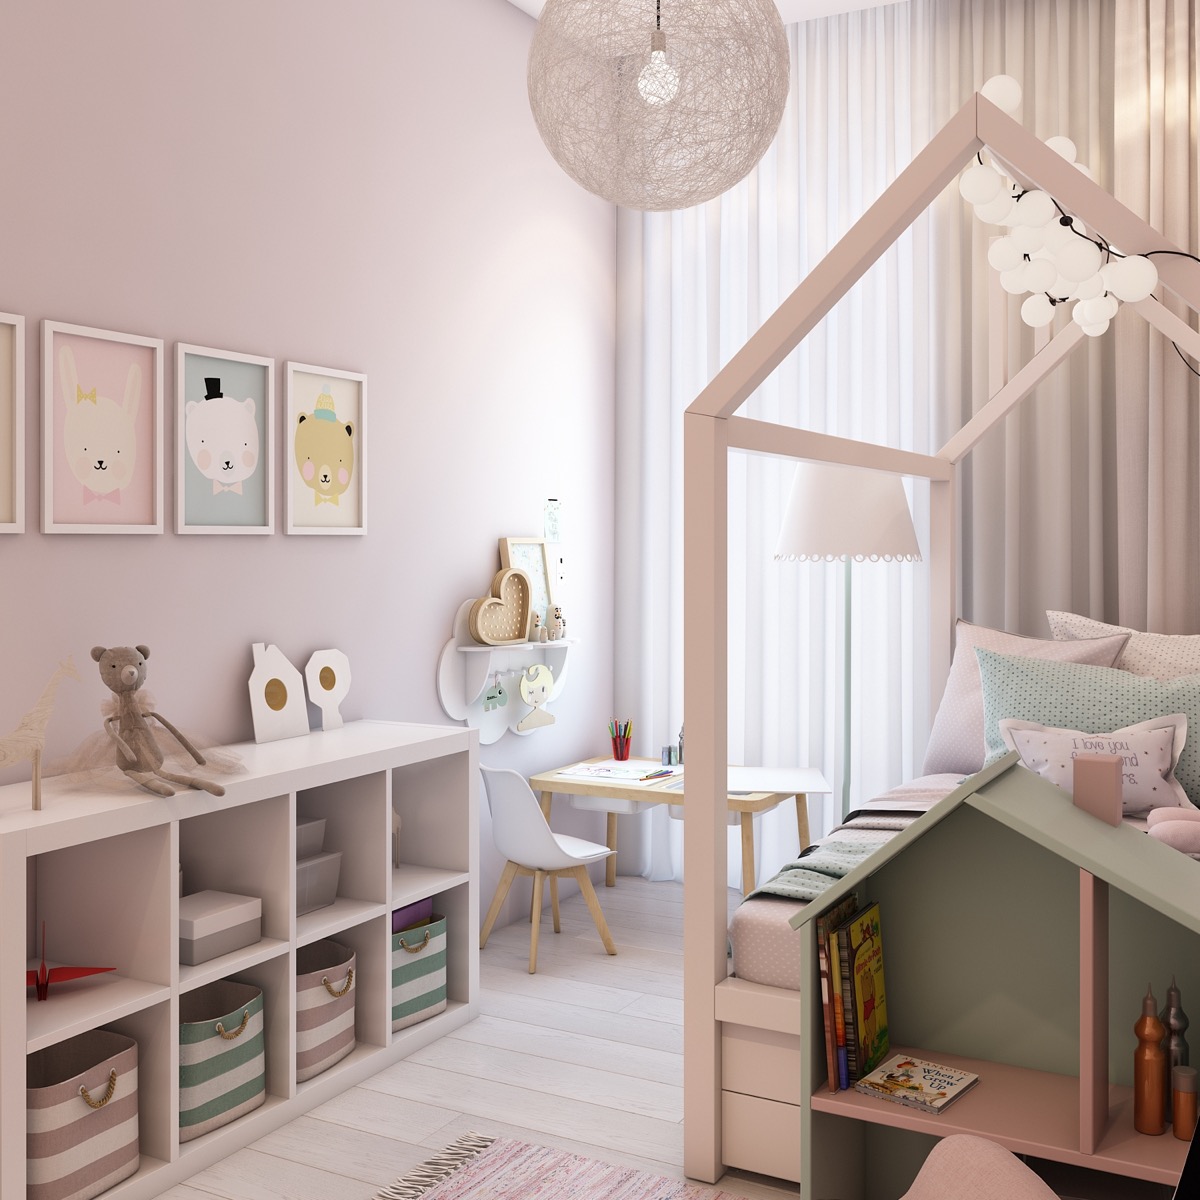 Hình ảnh phòng ngủ của trẻ được trang trí màu hồng phấn, tranh treo tường ngộ nghĩnh, khung giường hình ngôi nhà đáng yêu.